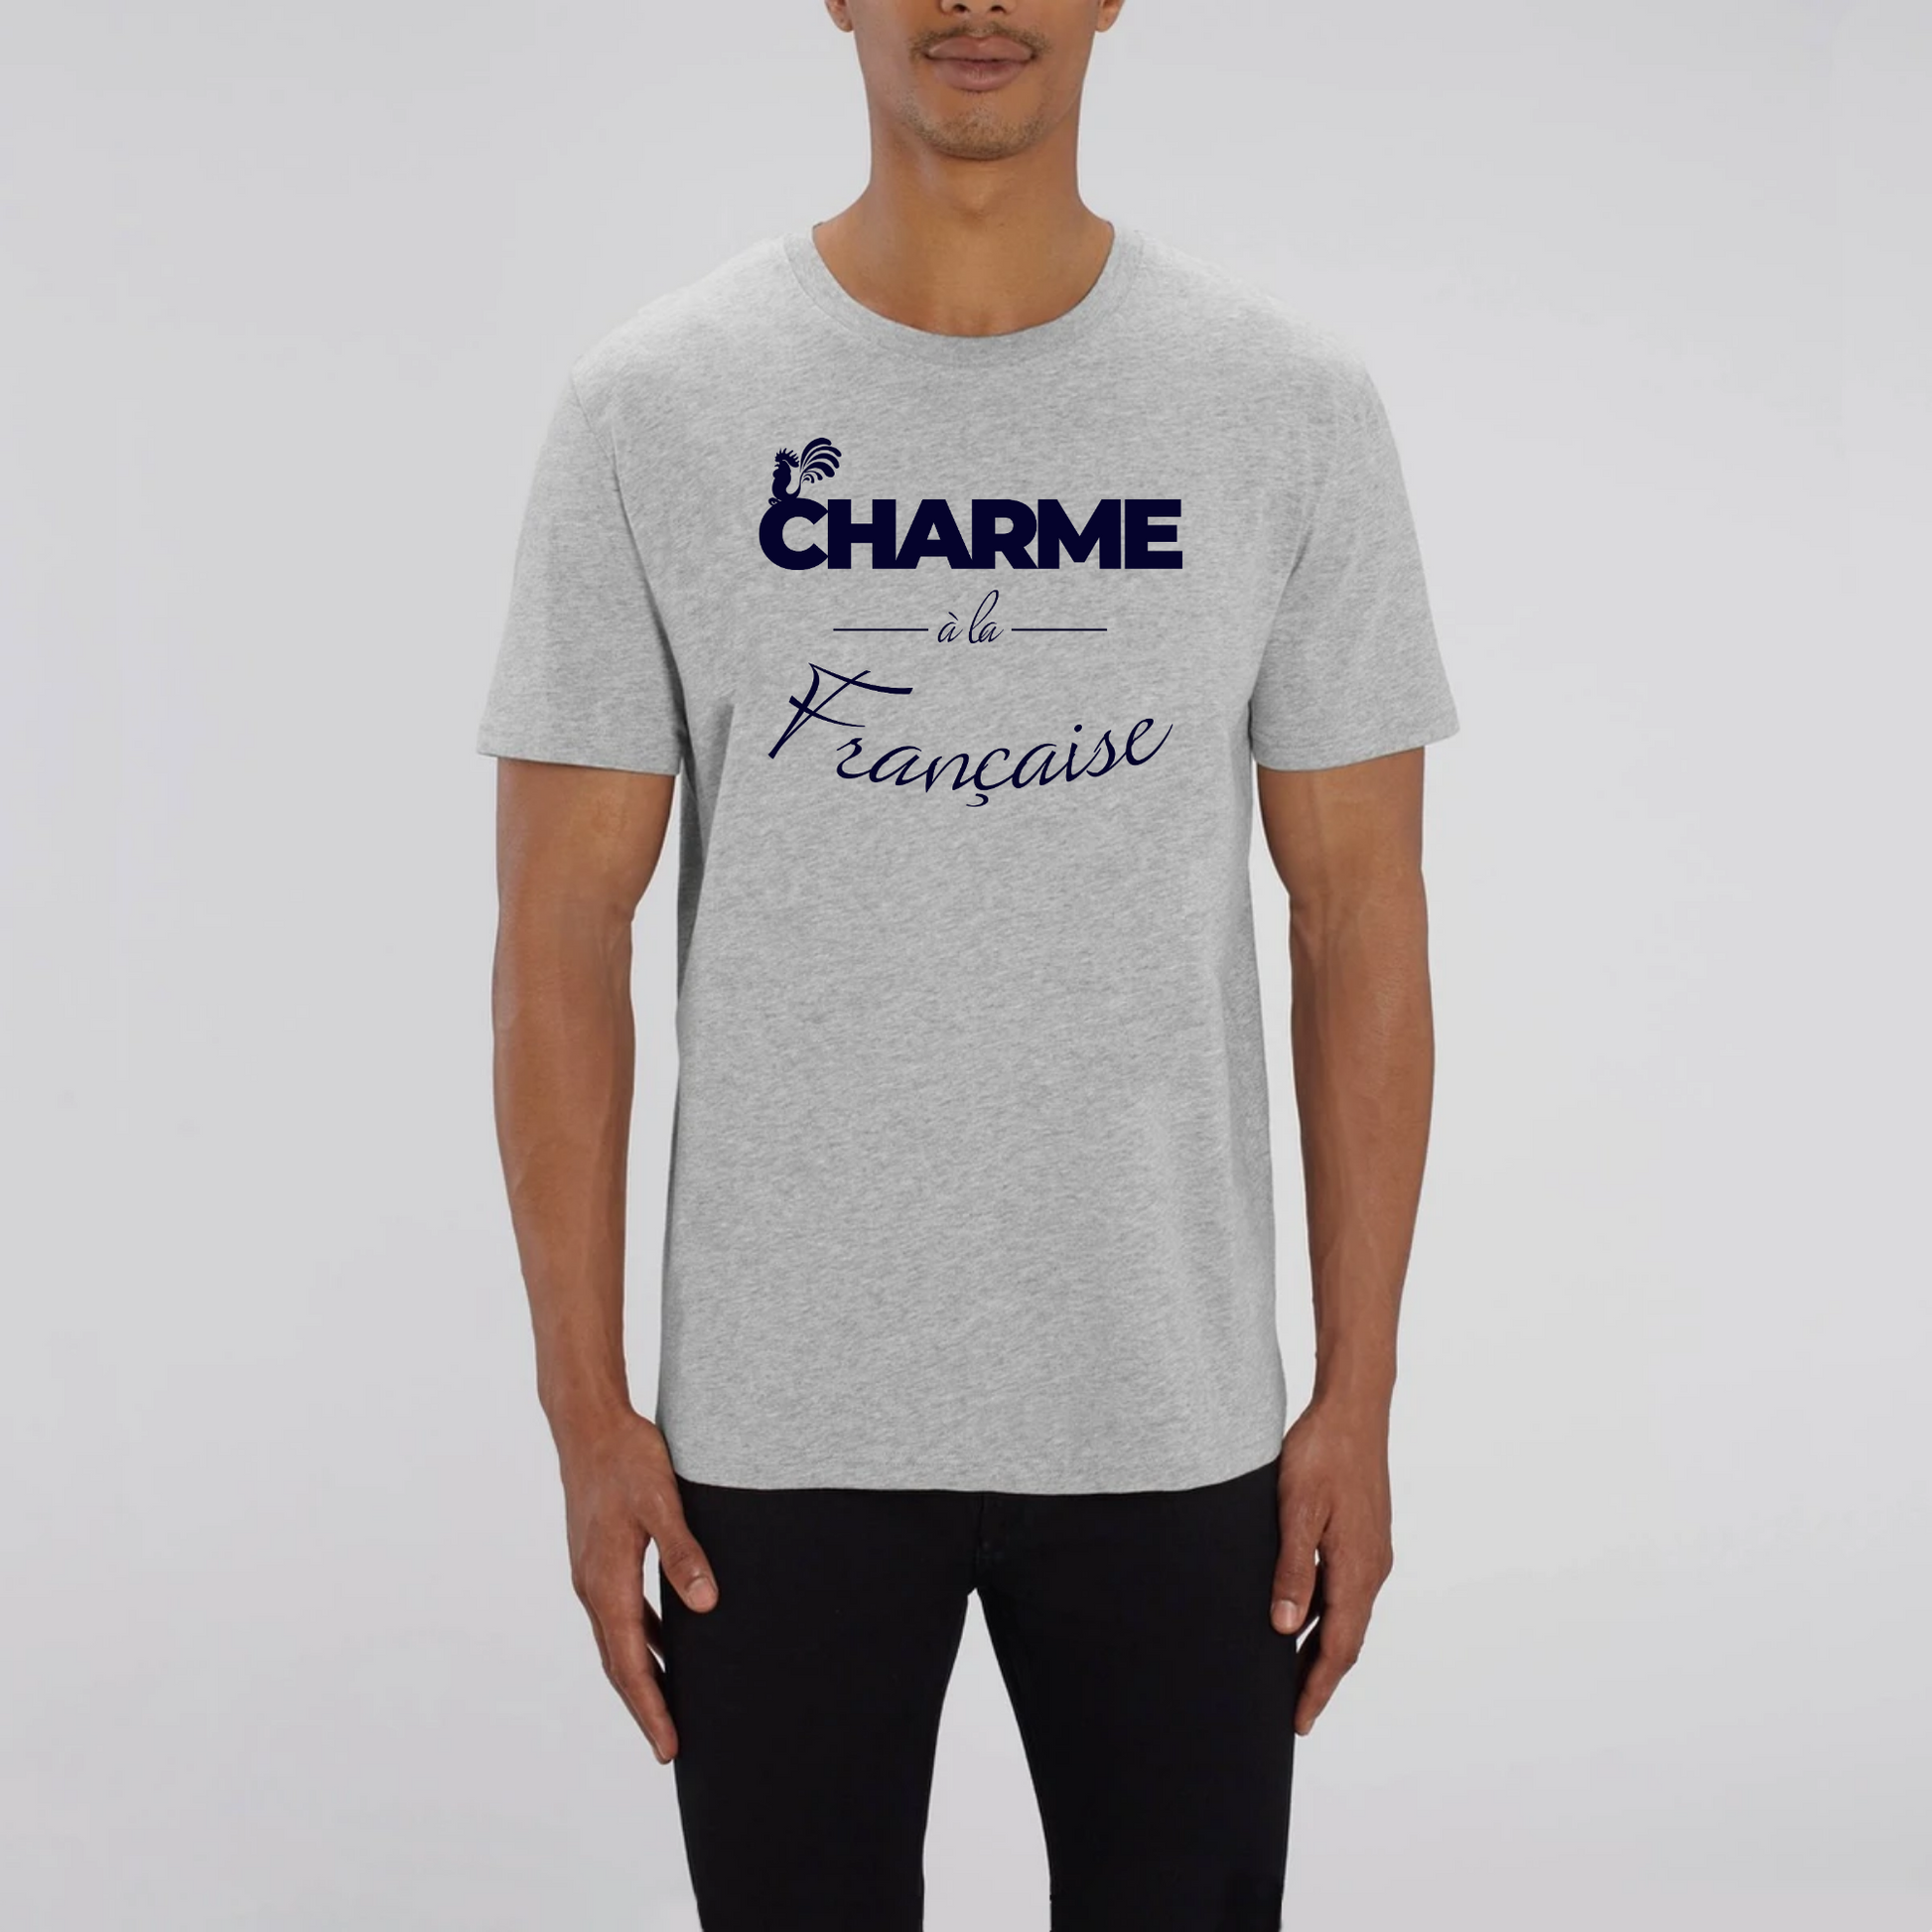 t-shirt charme à la française, tee shirt français, t-shirt homme France, t-shirt french, tee shirt homme coton bio, t-shirt France, Gris